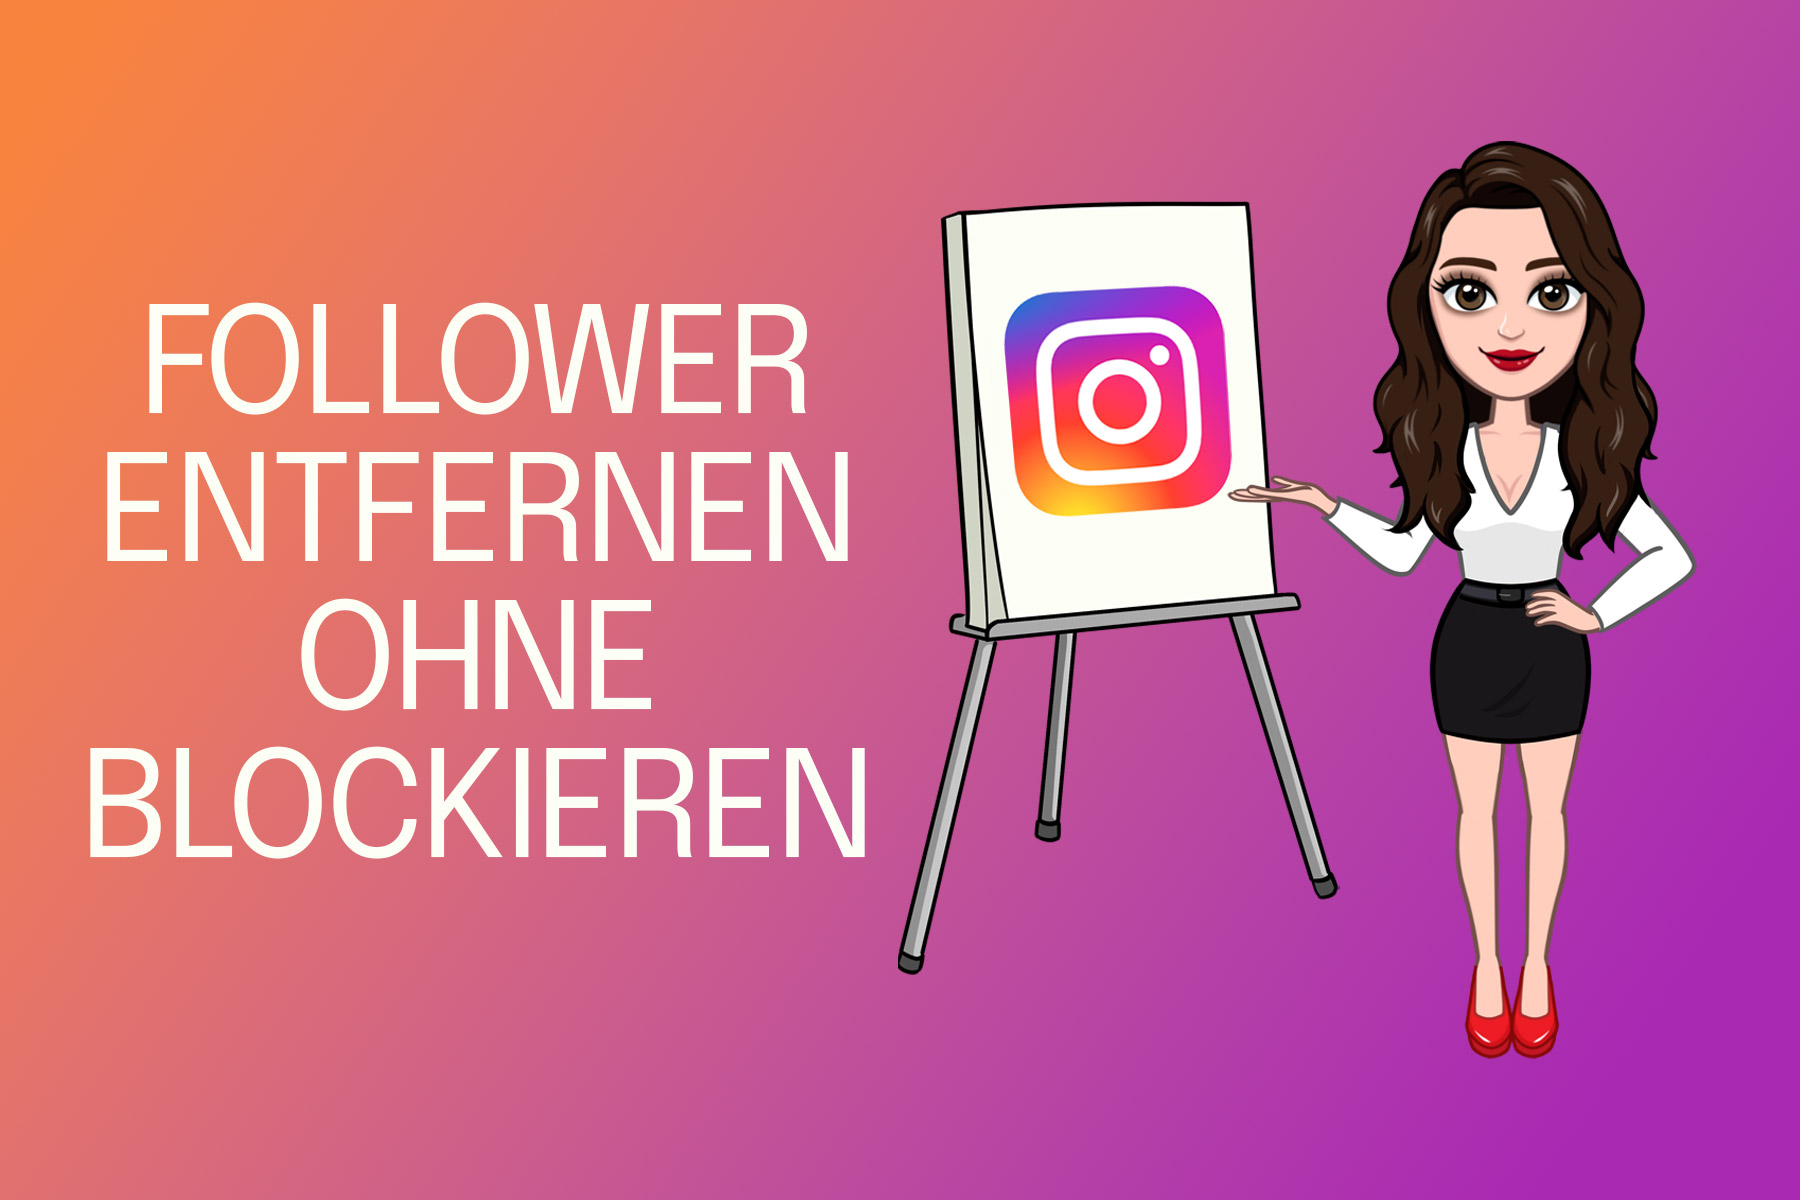 Instagram Follower entfernen - einfach ohne Blockieren entfolgen lassen ganz unauffällig